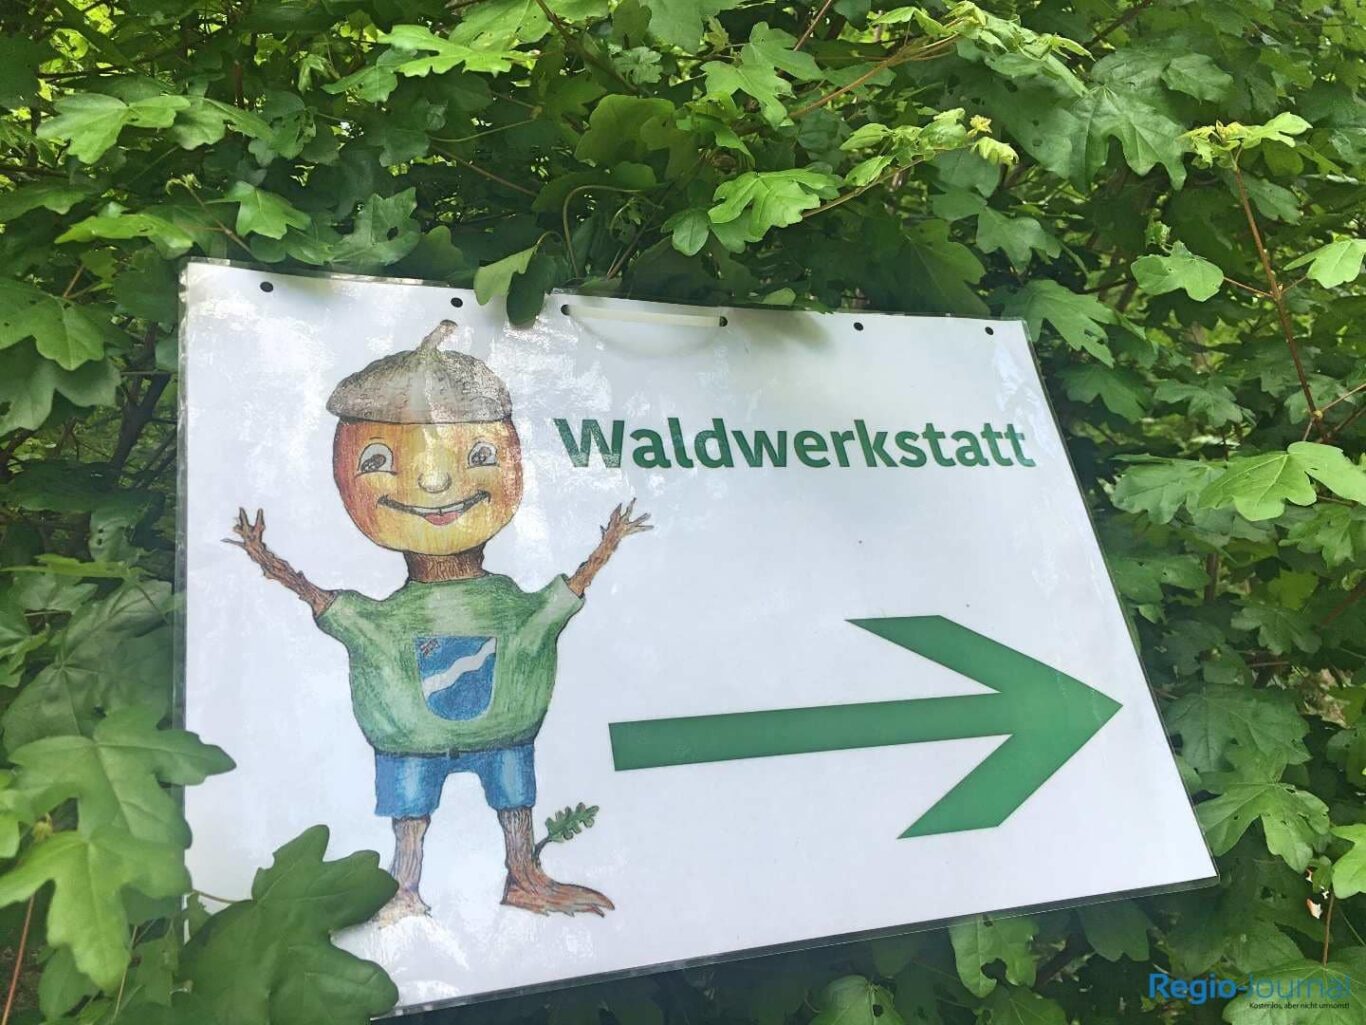 2. Waldwerkstatt in Sulzbach